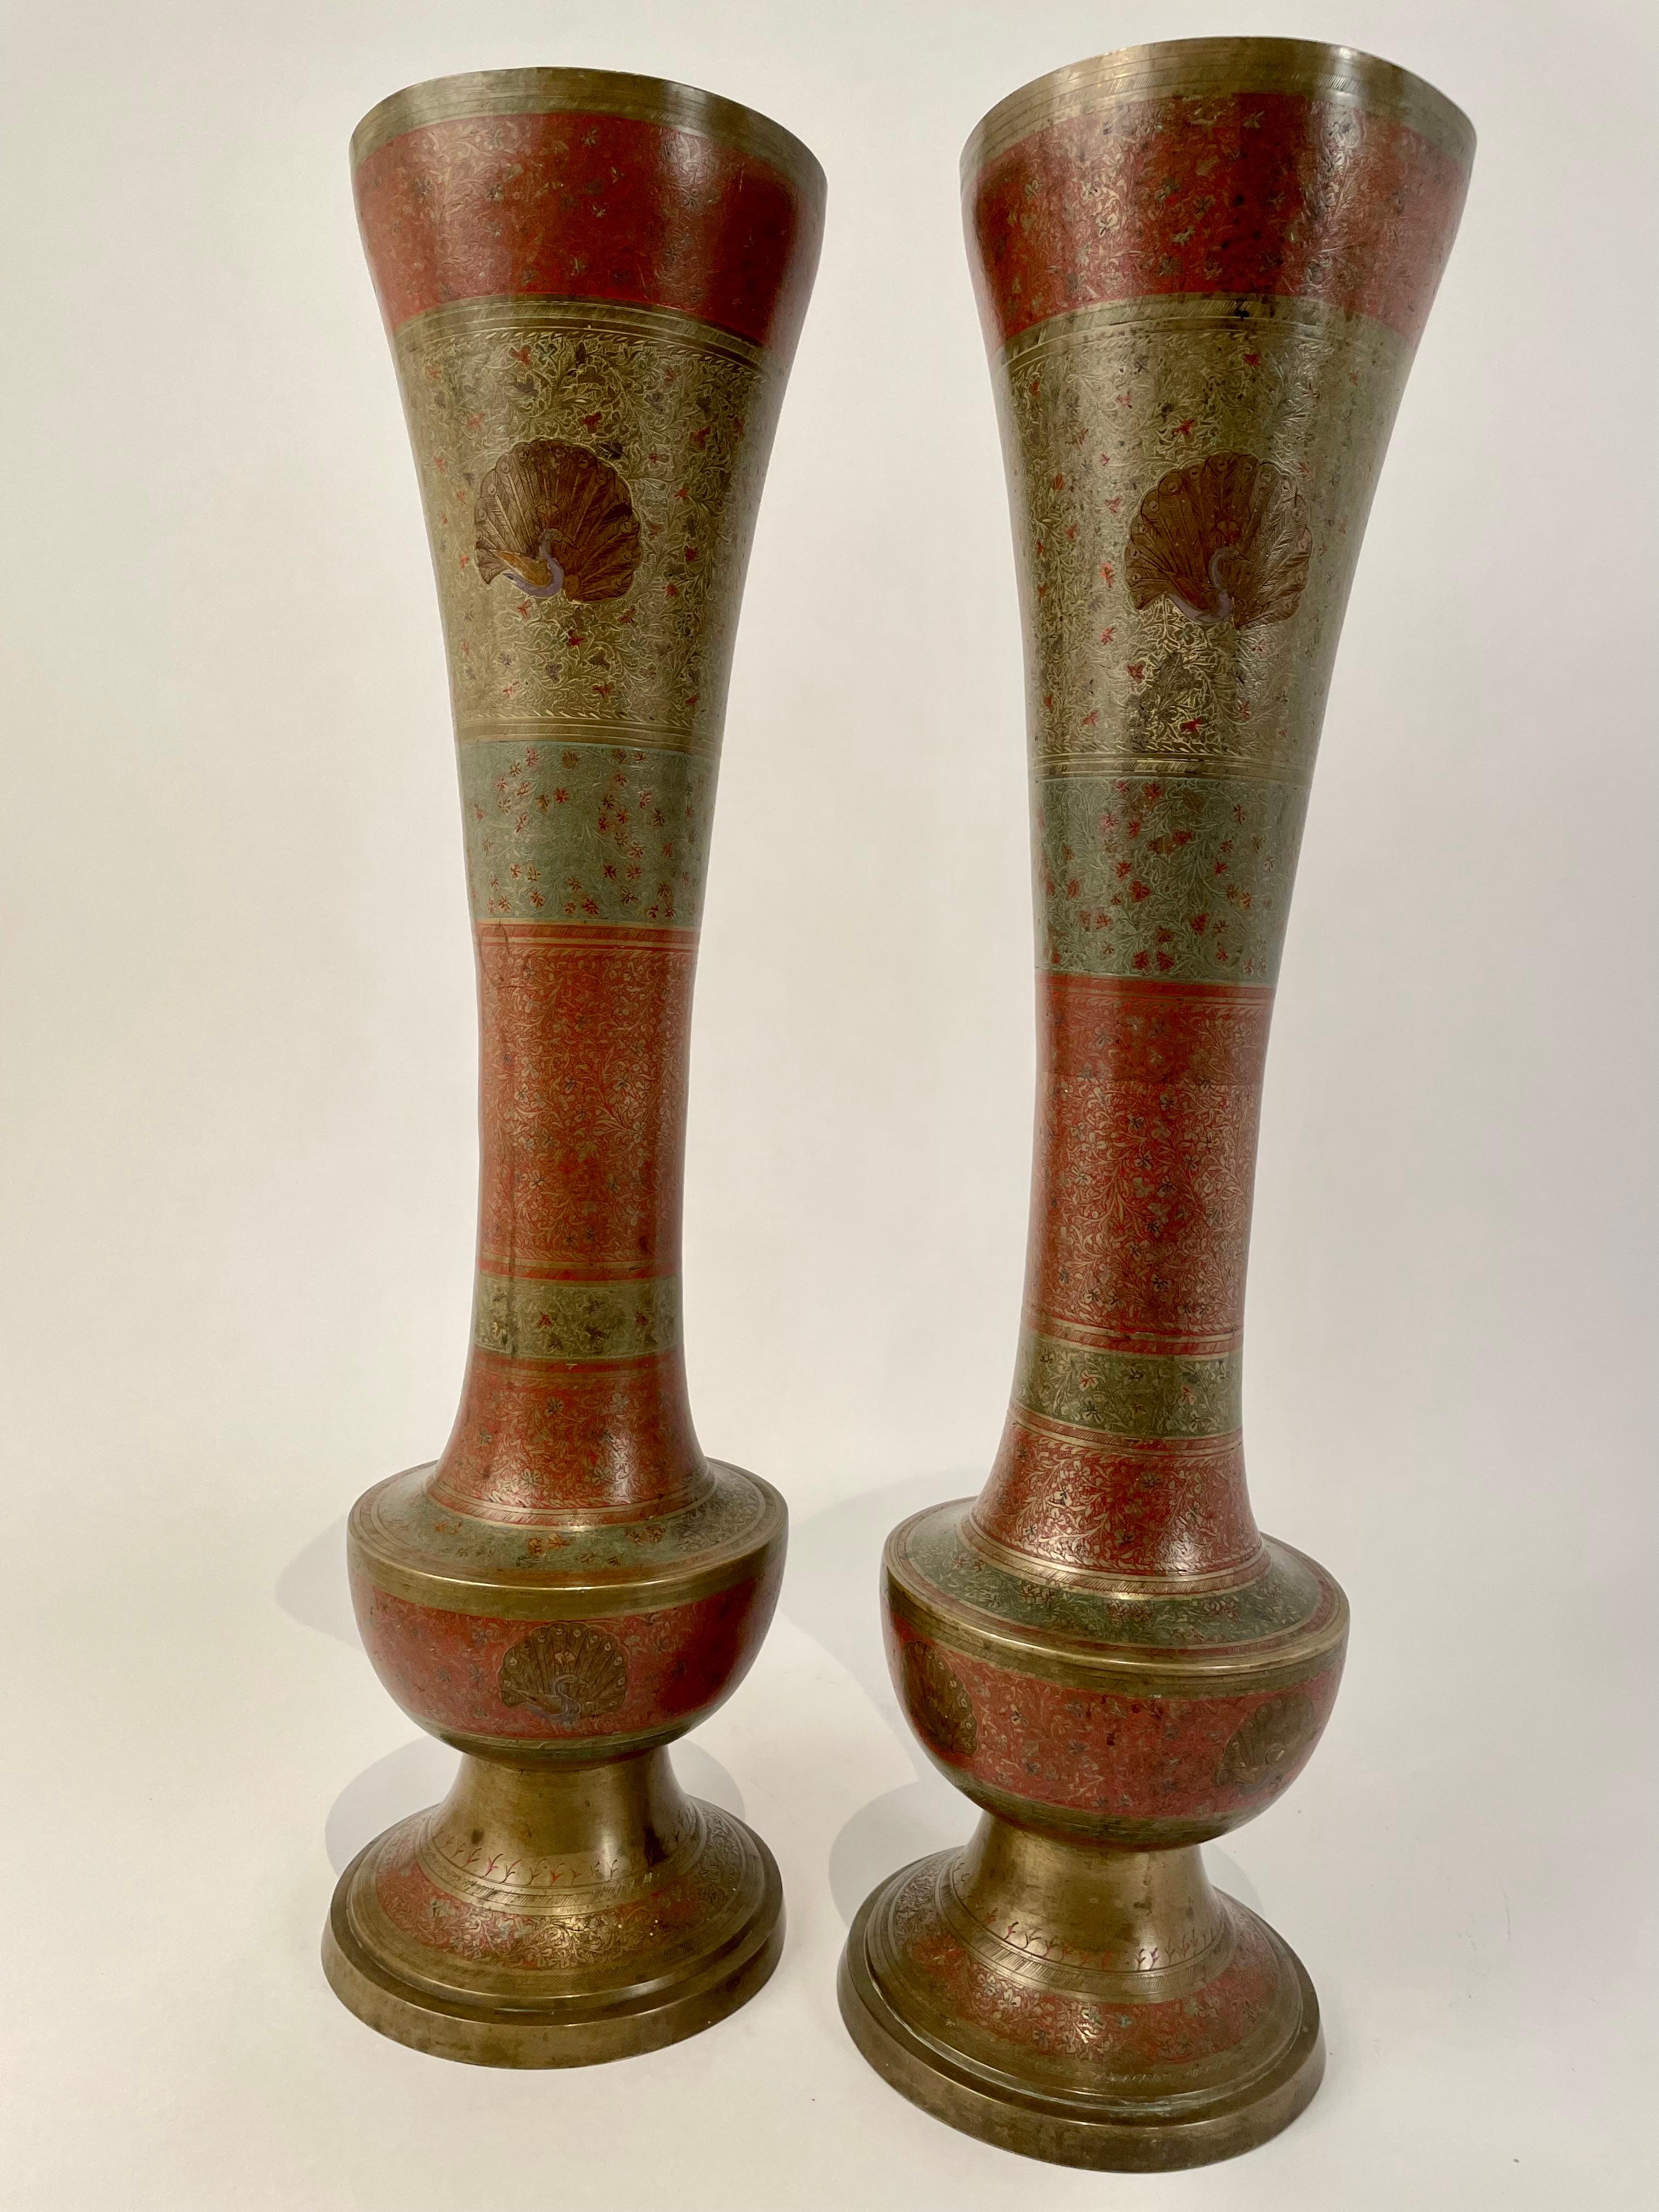 Beeindruckende und sehr coole großformatige Vasen in Flötenform aus Messing mit komplizierten geätzten Mustern auf der Oberfläche und Pfauendekor. Rot und grün gefärbt, ähnlich wie Cloisonné, mit einer schönen alten Patina auf dem Messing. Mit einer